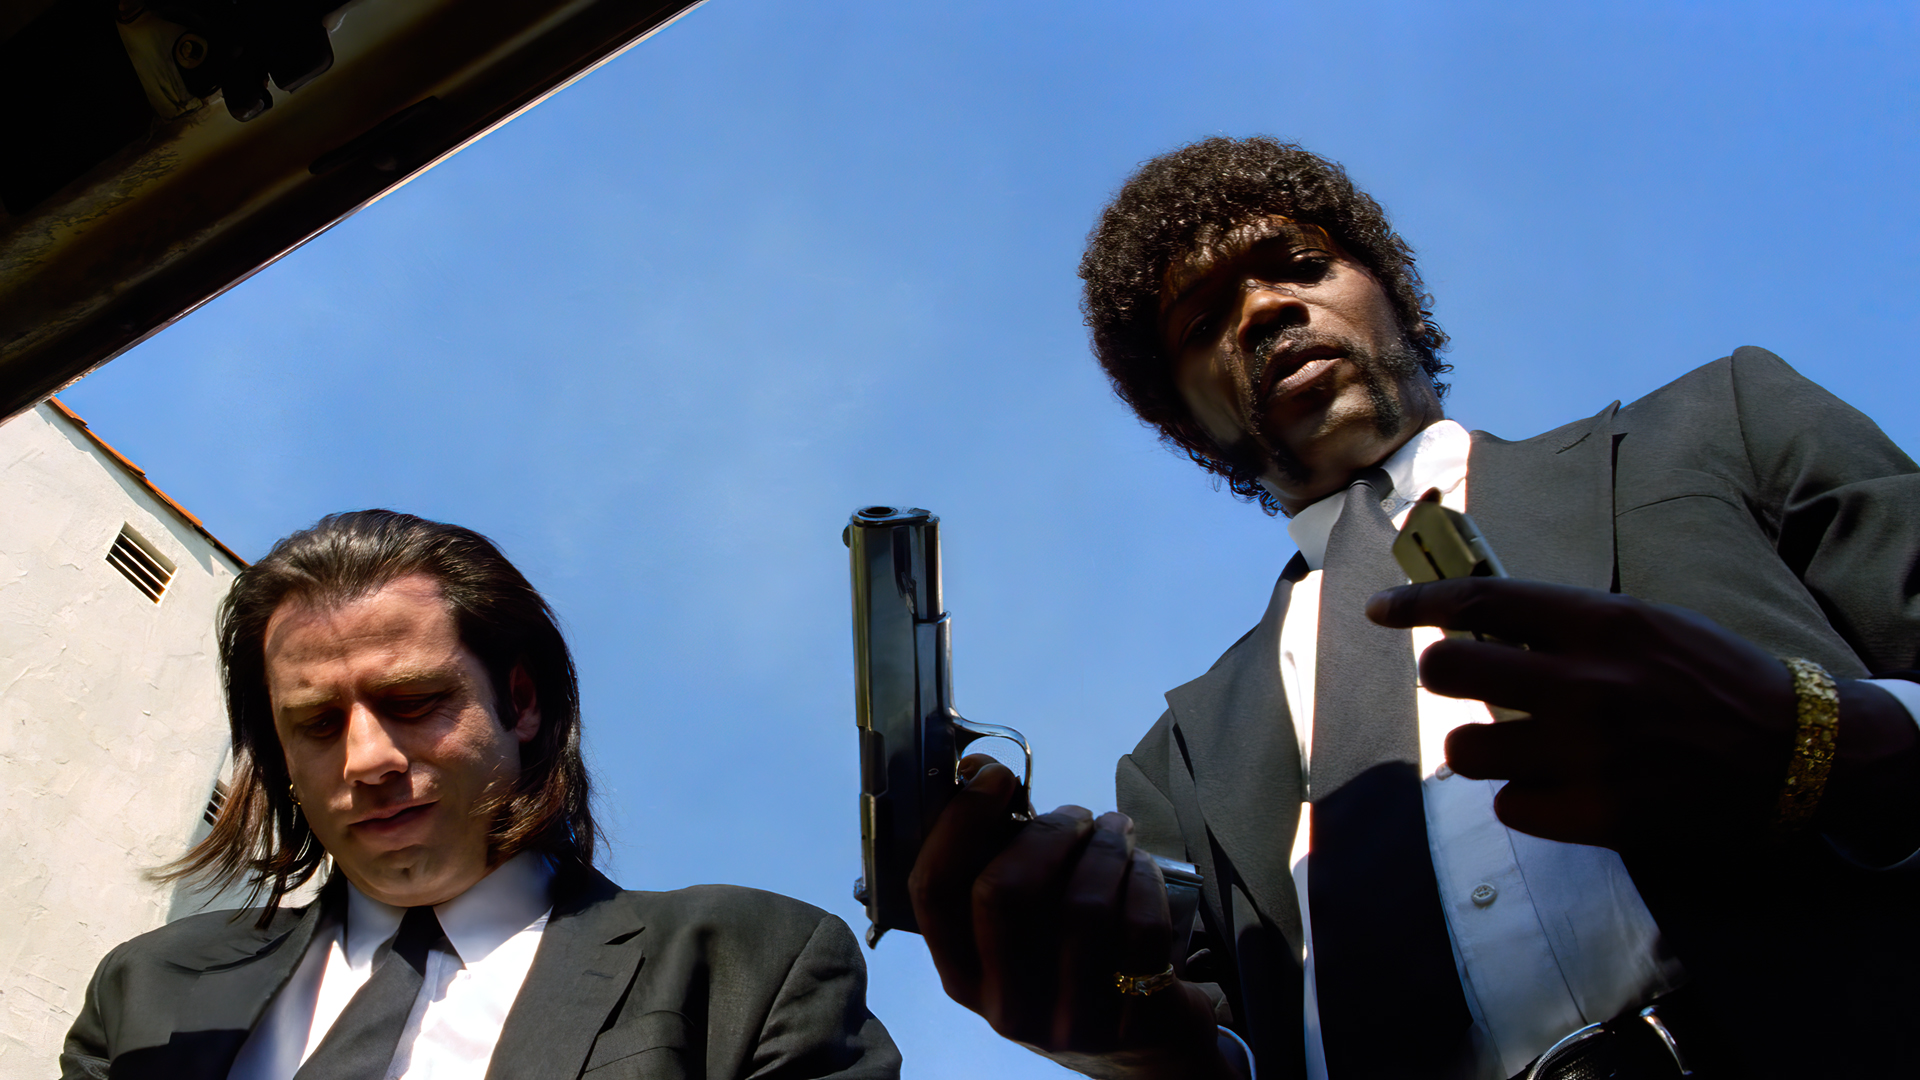 Pulp Fiction Pistol John Travolta Samuel L Jackson Men Suits Movies Film Stills 1920x1080